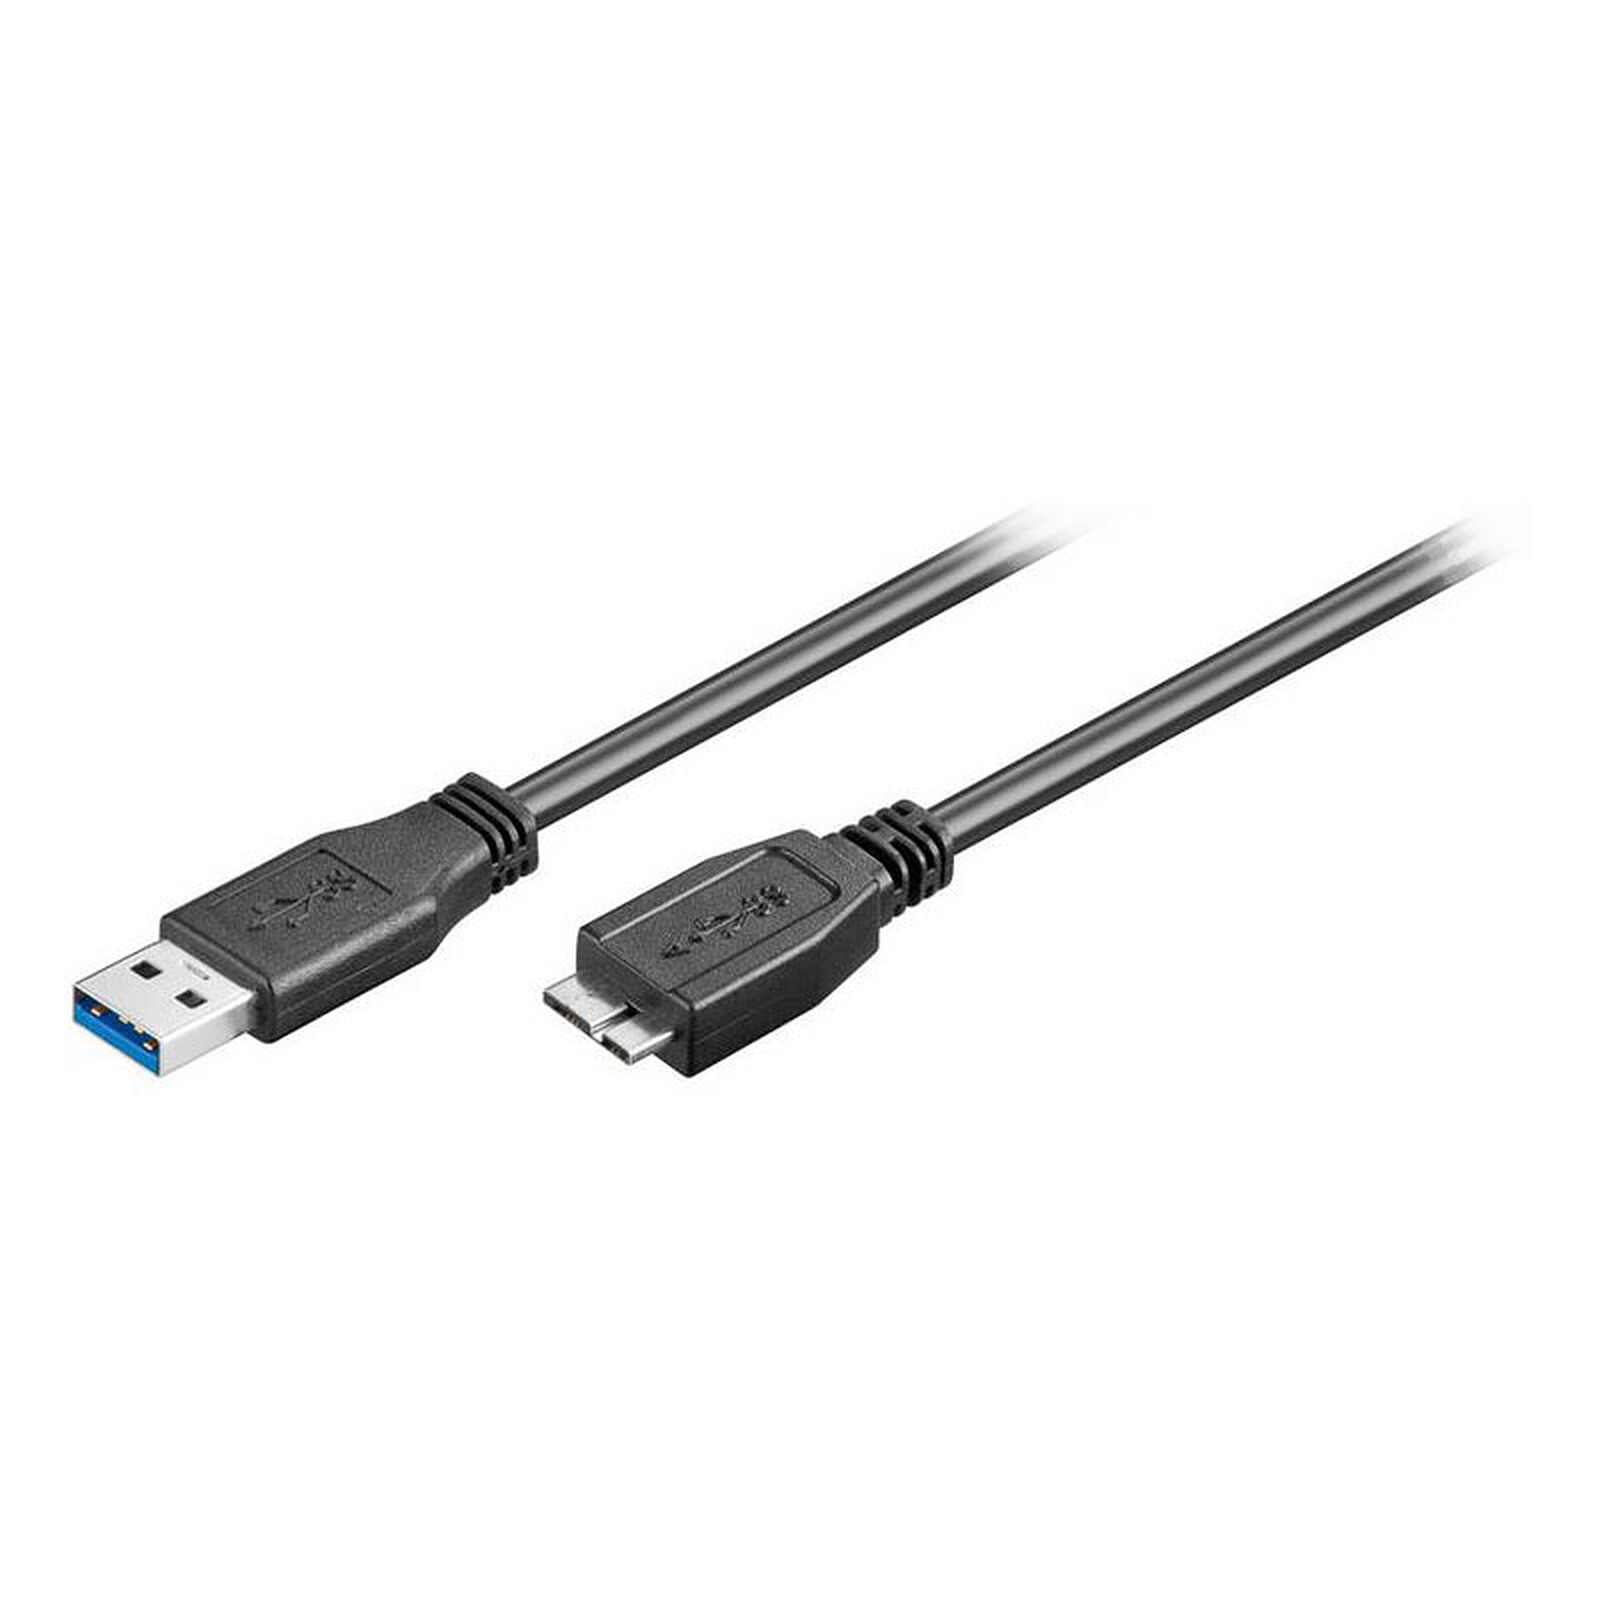 Câble USB / Micro USB - transfert des données sur un PC